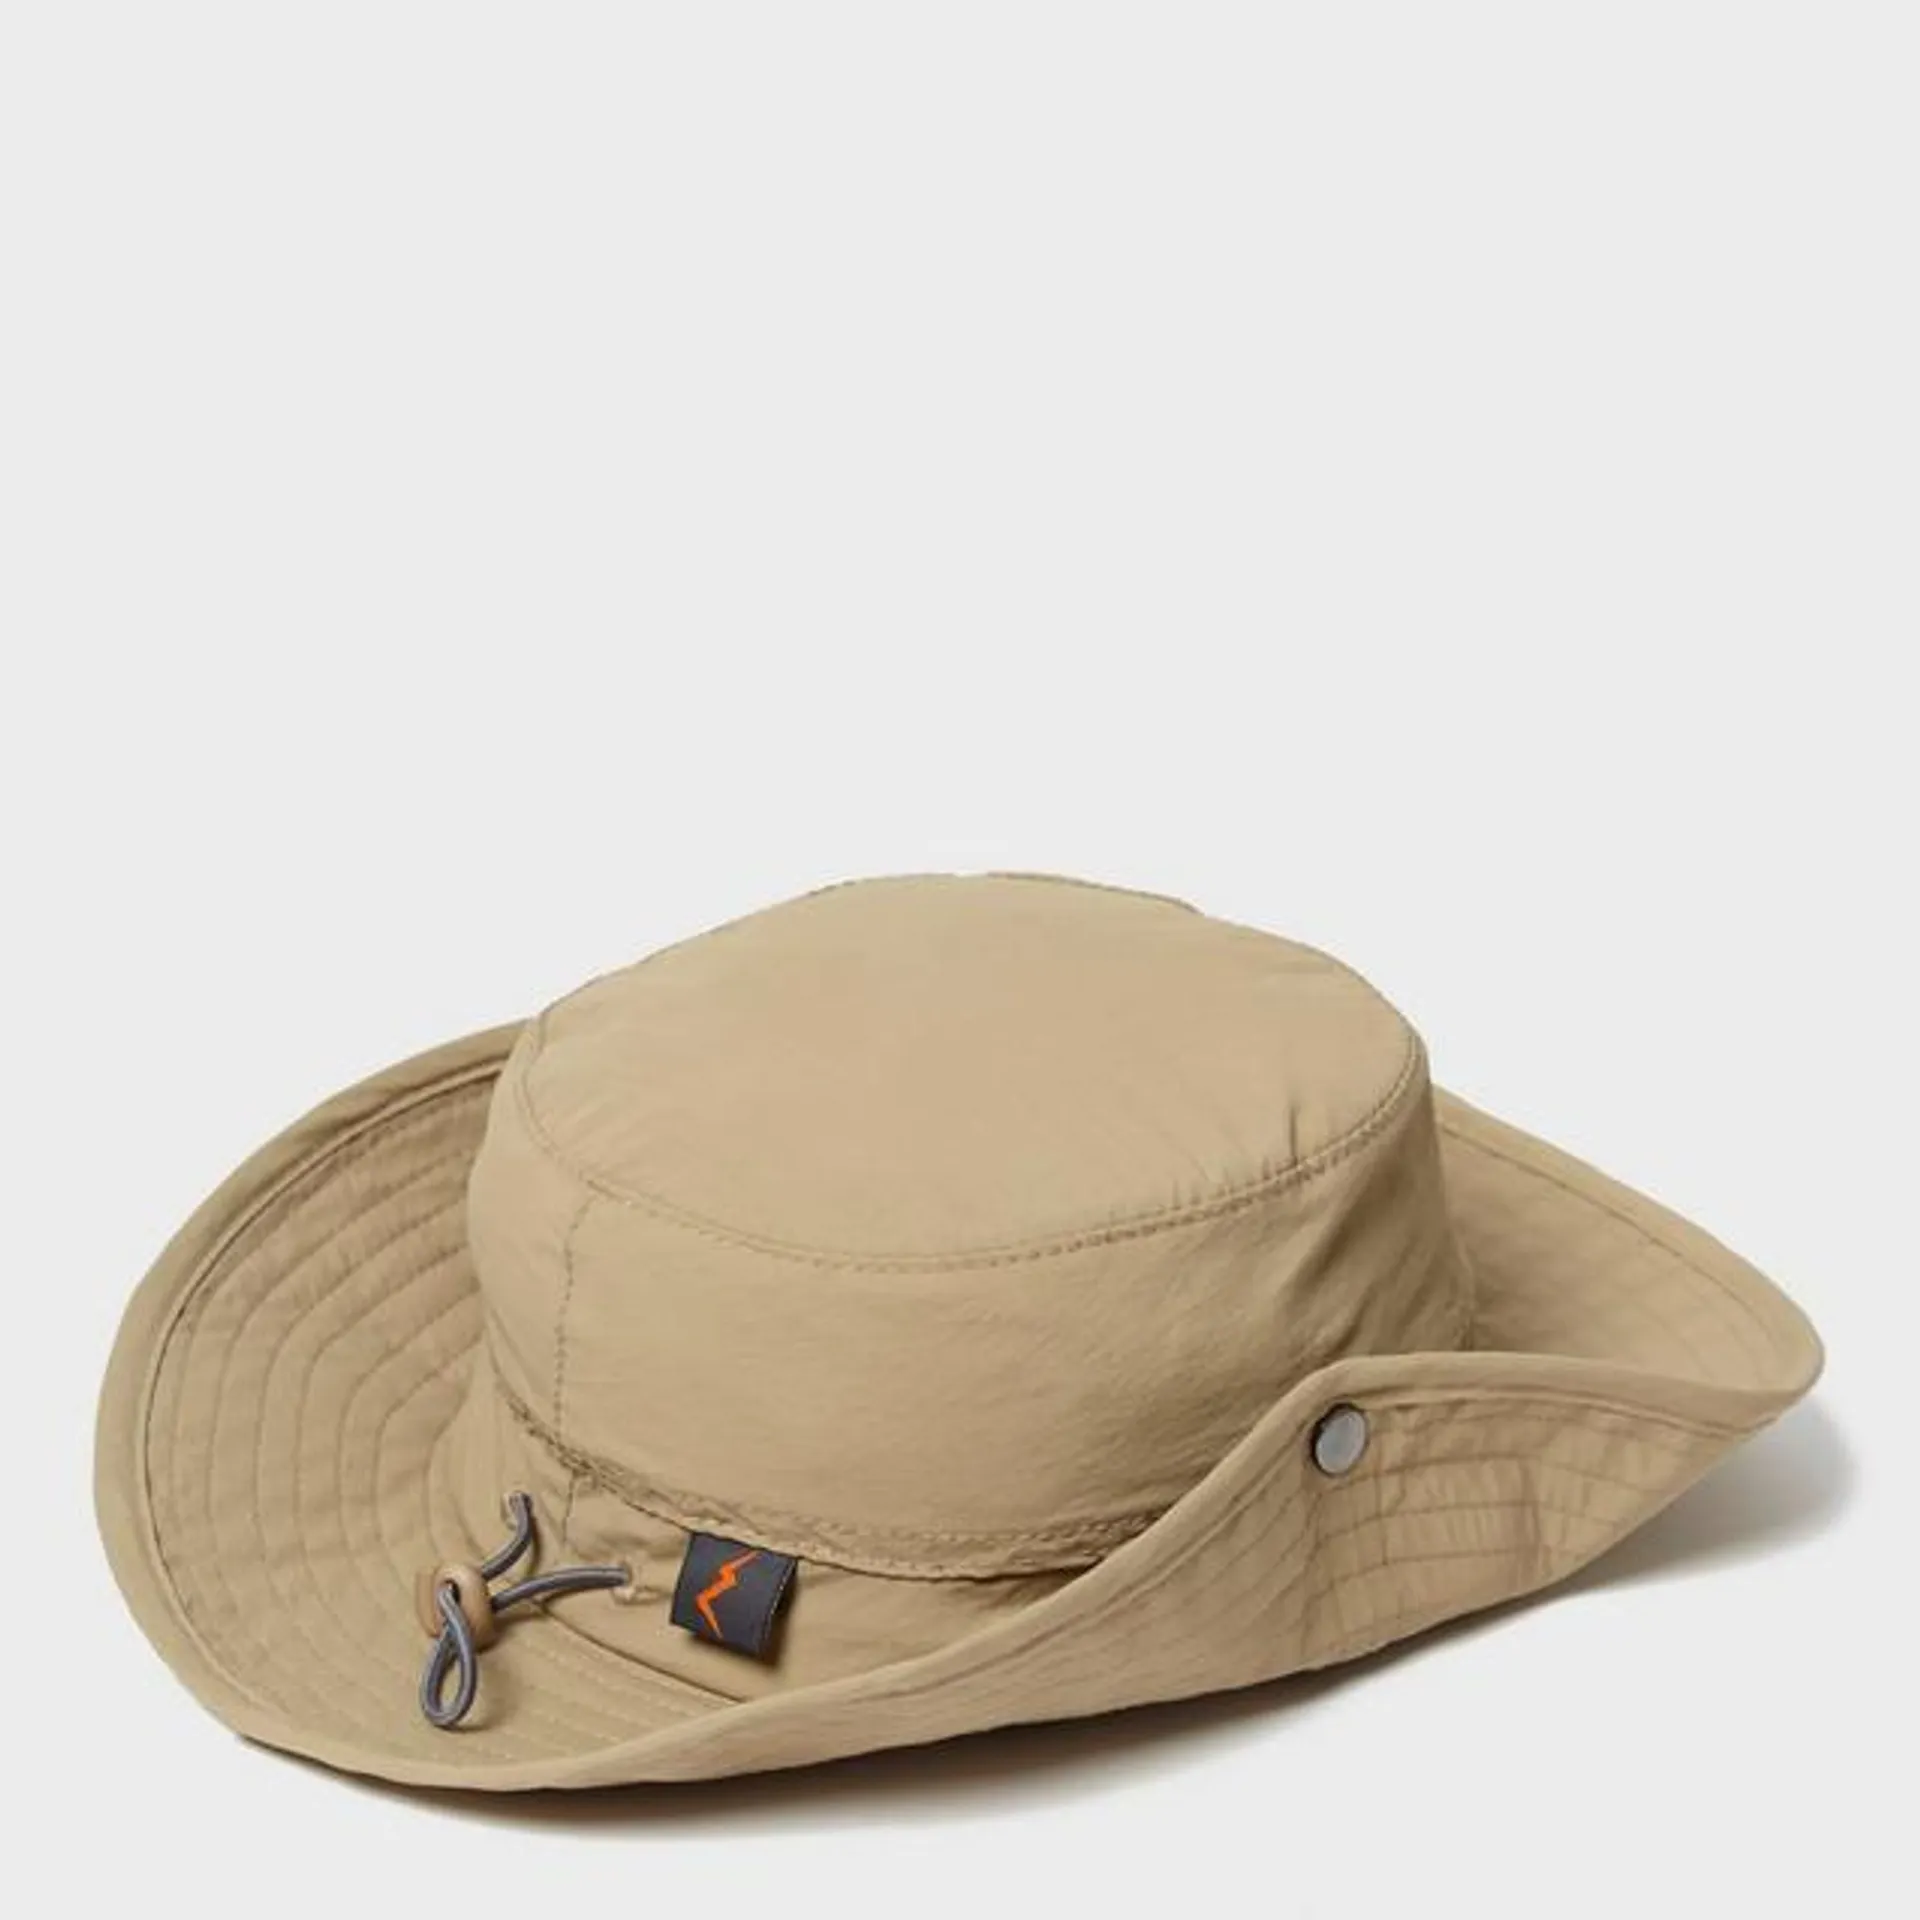 Men's Floppy Sun Hat